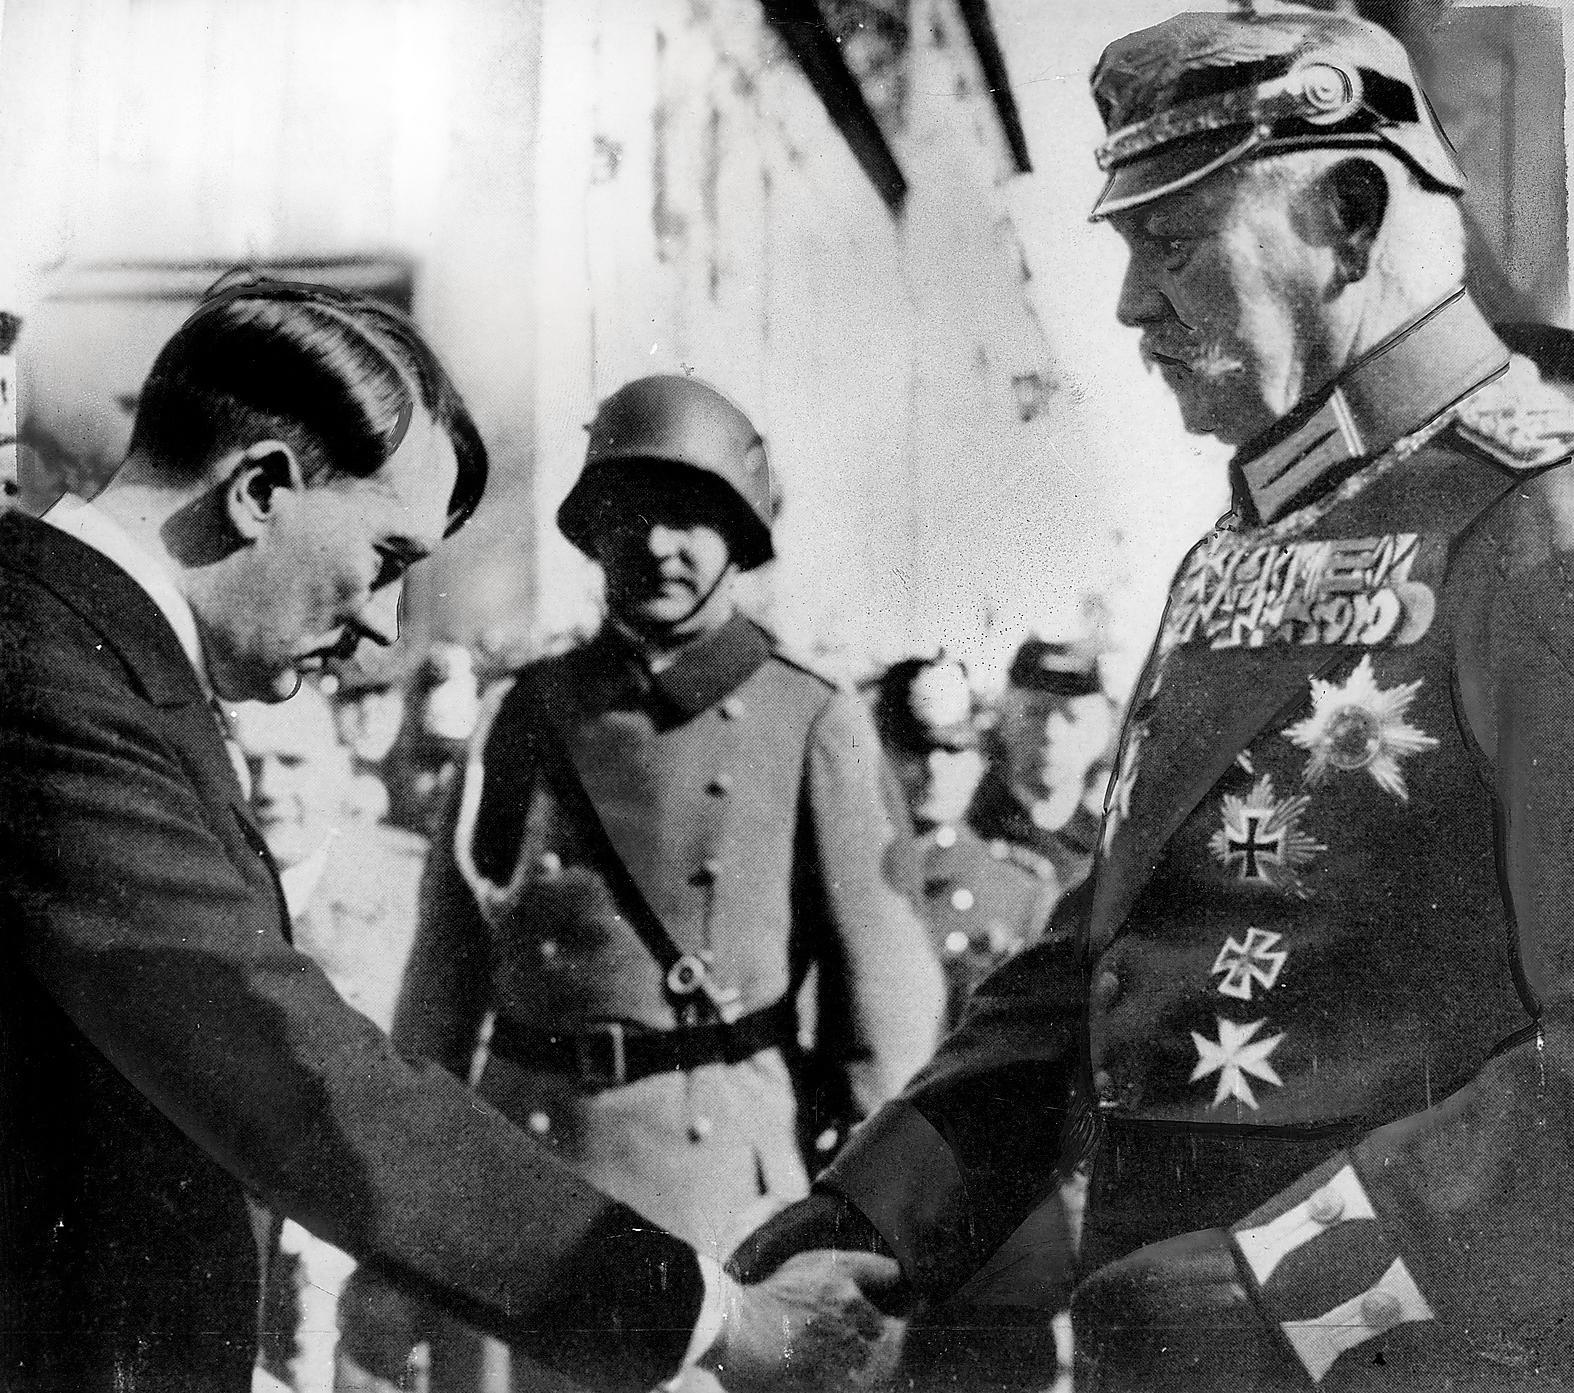 Makten i nazisternas händer  Adolf Hitler och presidenten Paul von Hindenburg i mars 1933, bara dagar innan riksdagen tog det ödesdigra beslutet att  överlämna makten i nazisternas händer.